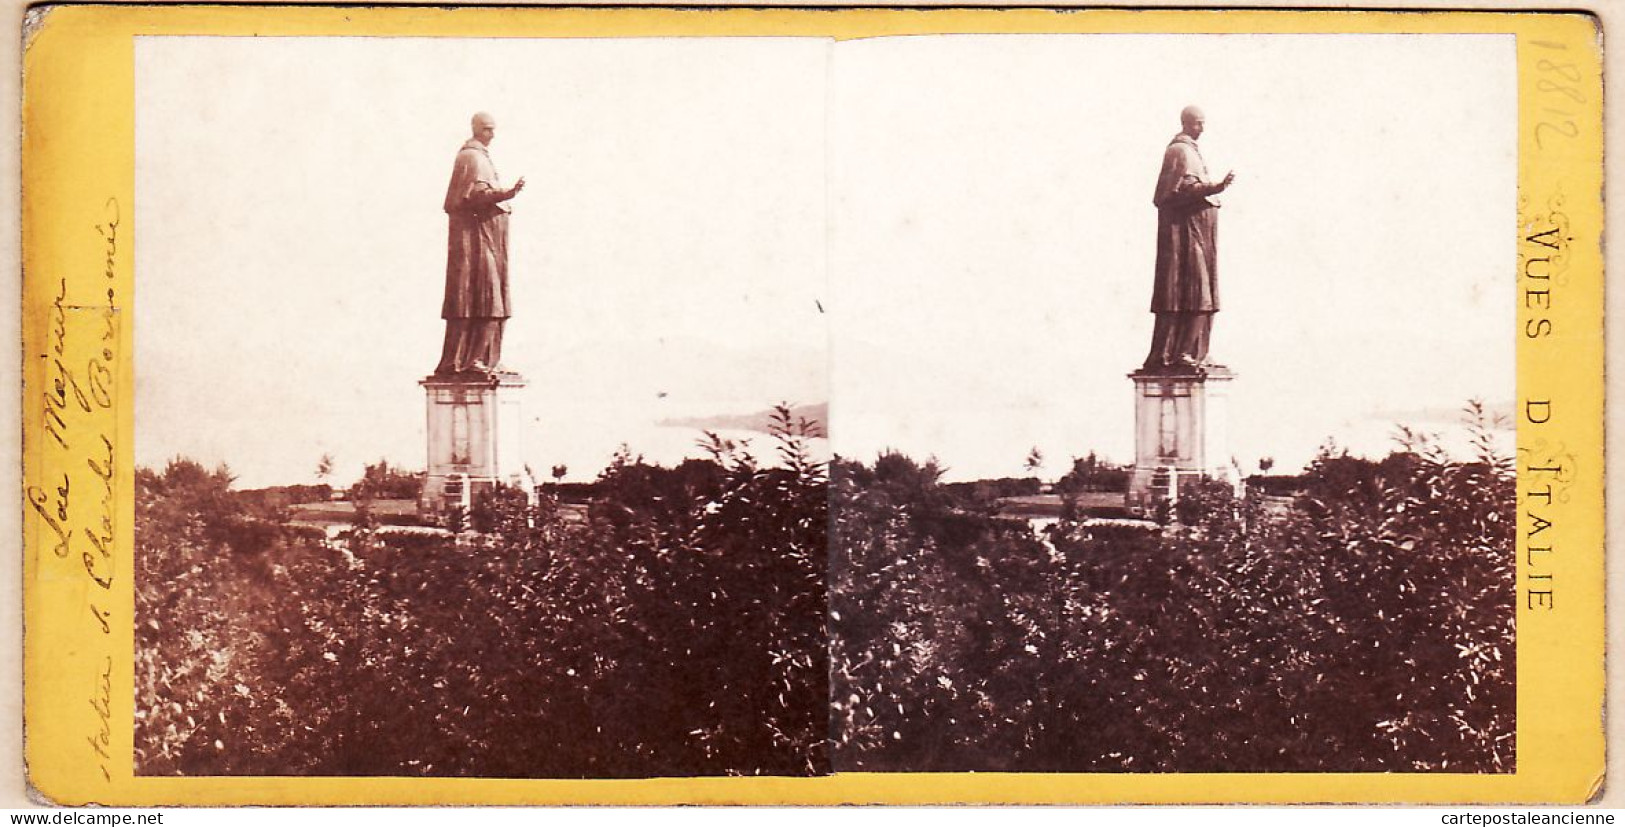 04562 / Fotografia Stereo 1865s Italia StatuaSanto LAC MAJEUR Statue De Saint-Charles-BORROMEE Sancarlone Vues Italie - Stereoscopio